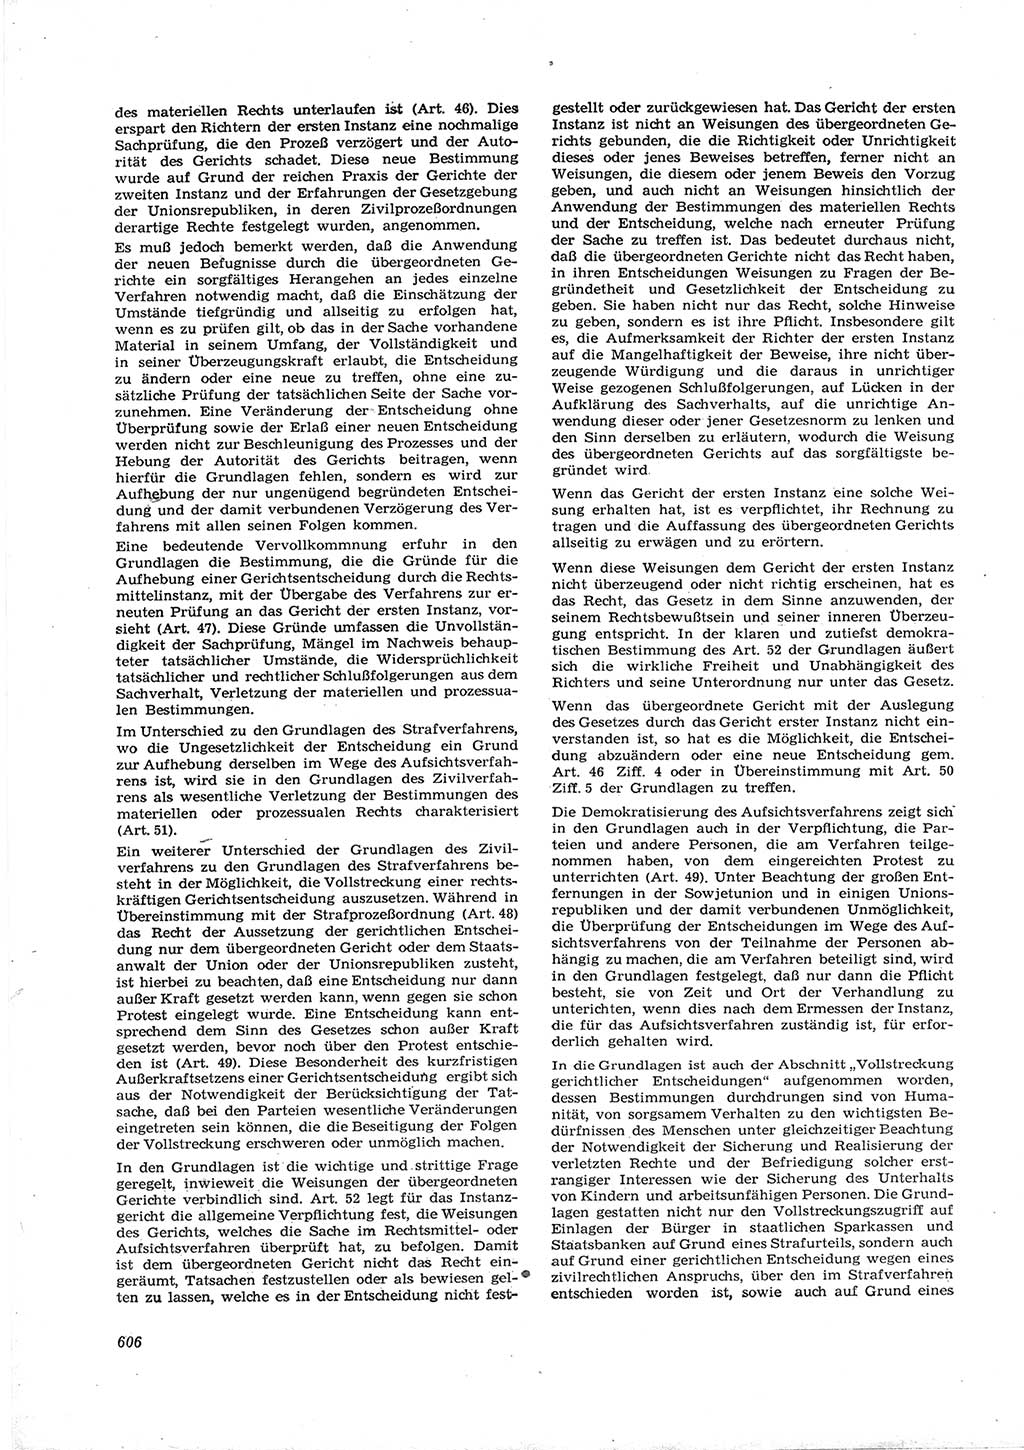 Neue Justiz (NJ), Zeitschrift für Recht und Rechtswissenschaft [Deutsche Demokratische Republik (DDR)], 16. Jahrgang 1962, Seite 606 (NJ DDR 1962, S. 606)